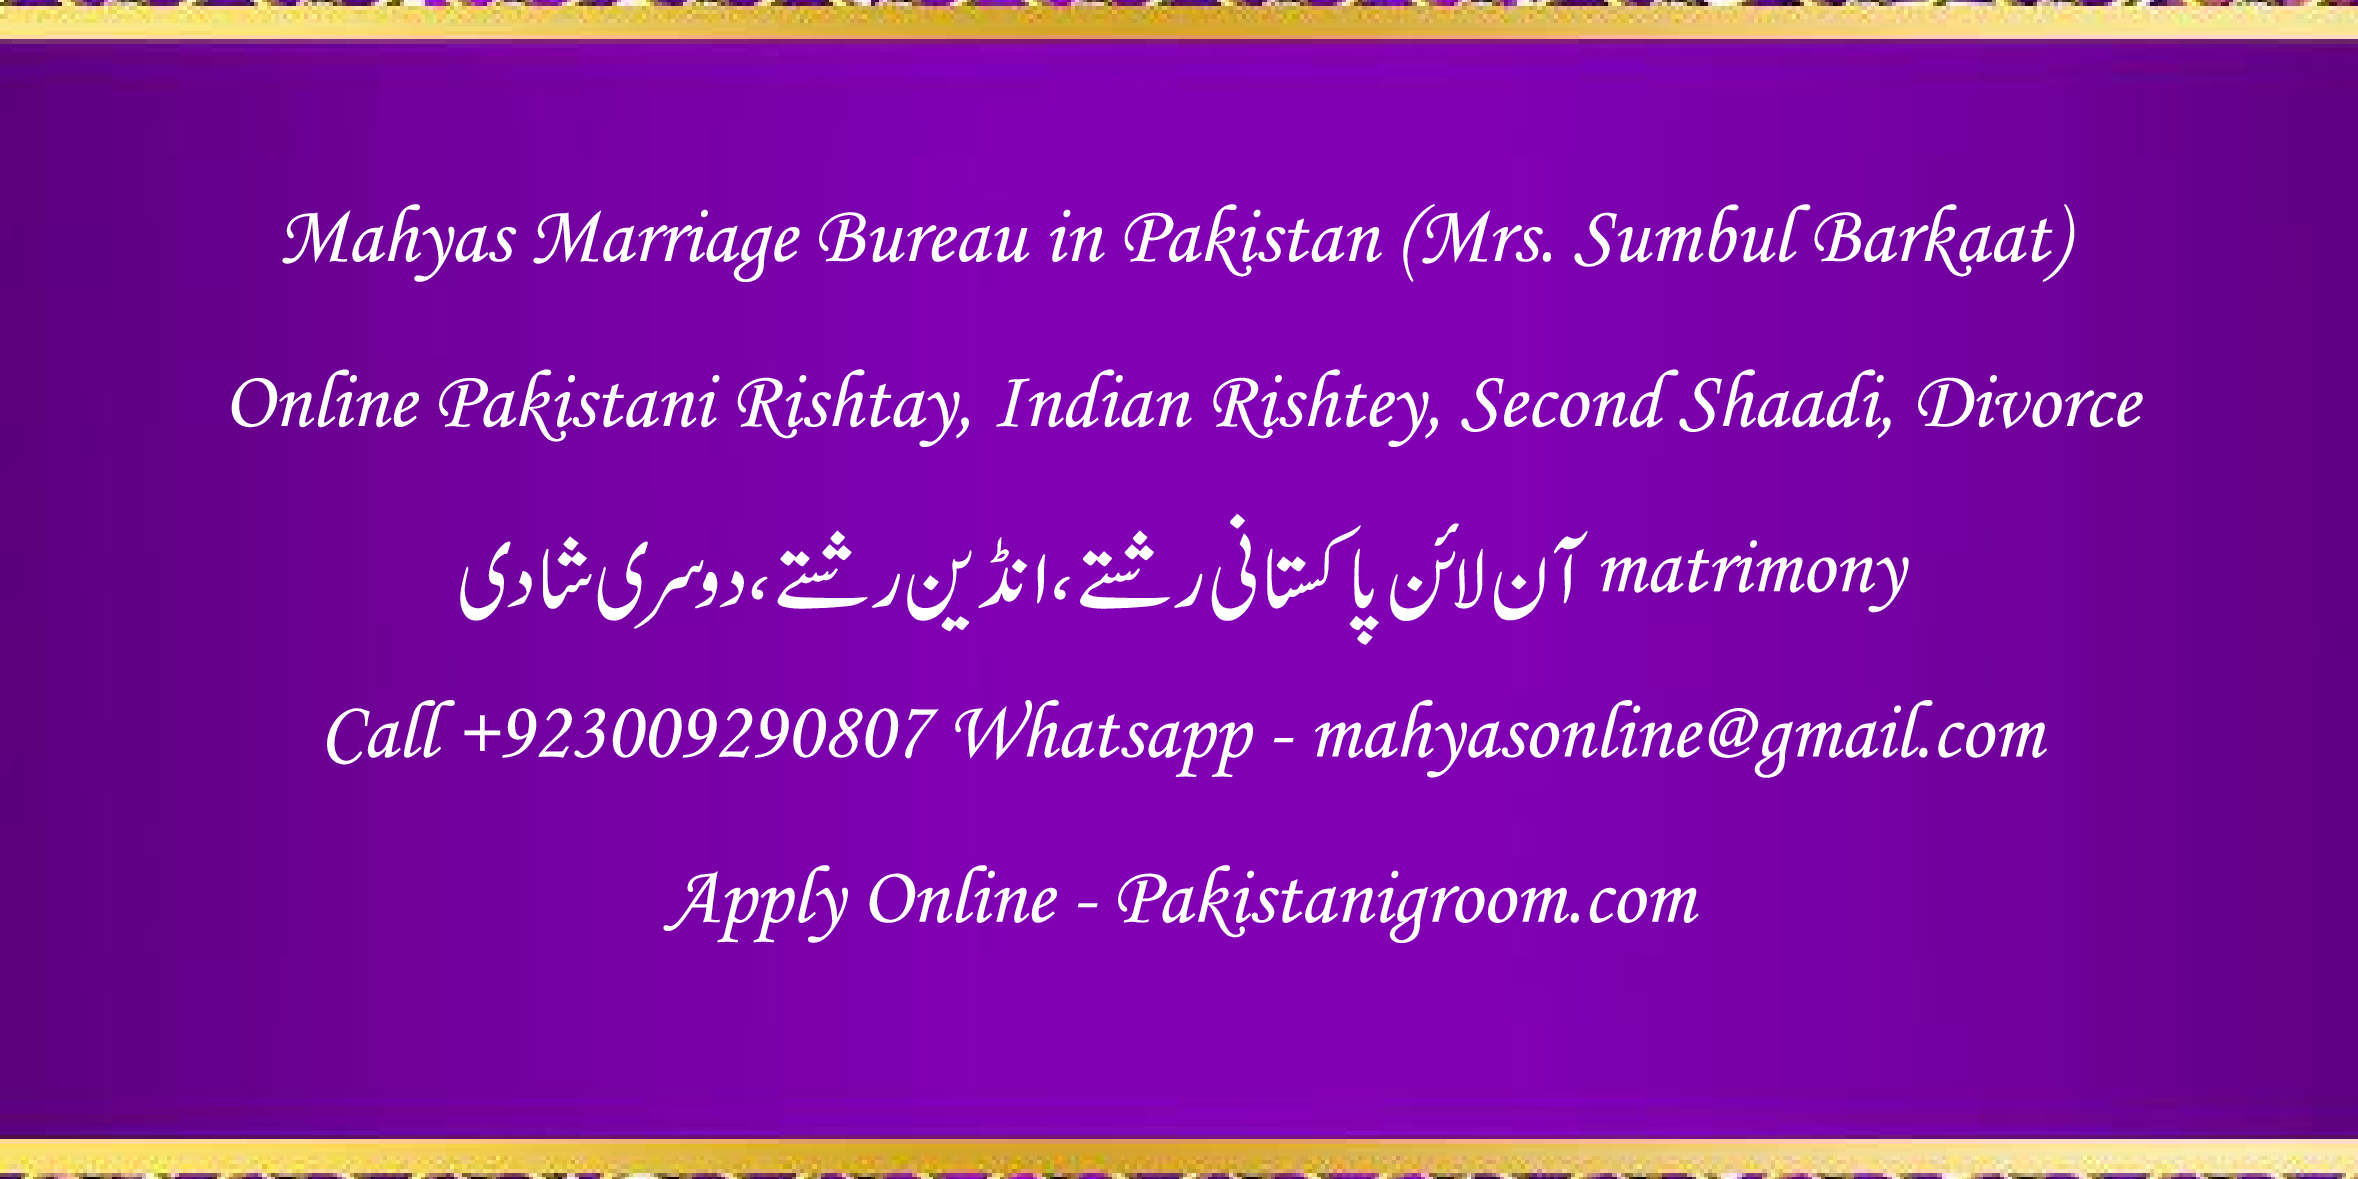 Mahyas-marriage-bureau-Karachi-Pakistan-for-Shia-Sunni-Remarriage-Divorce-Widow-Second-marriage-Punjabi-Pashto-Urdu-13.png